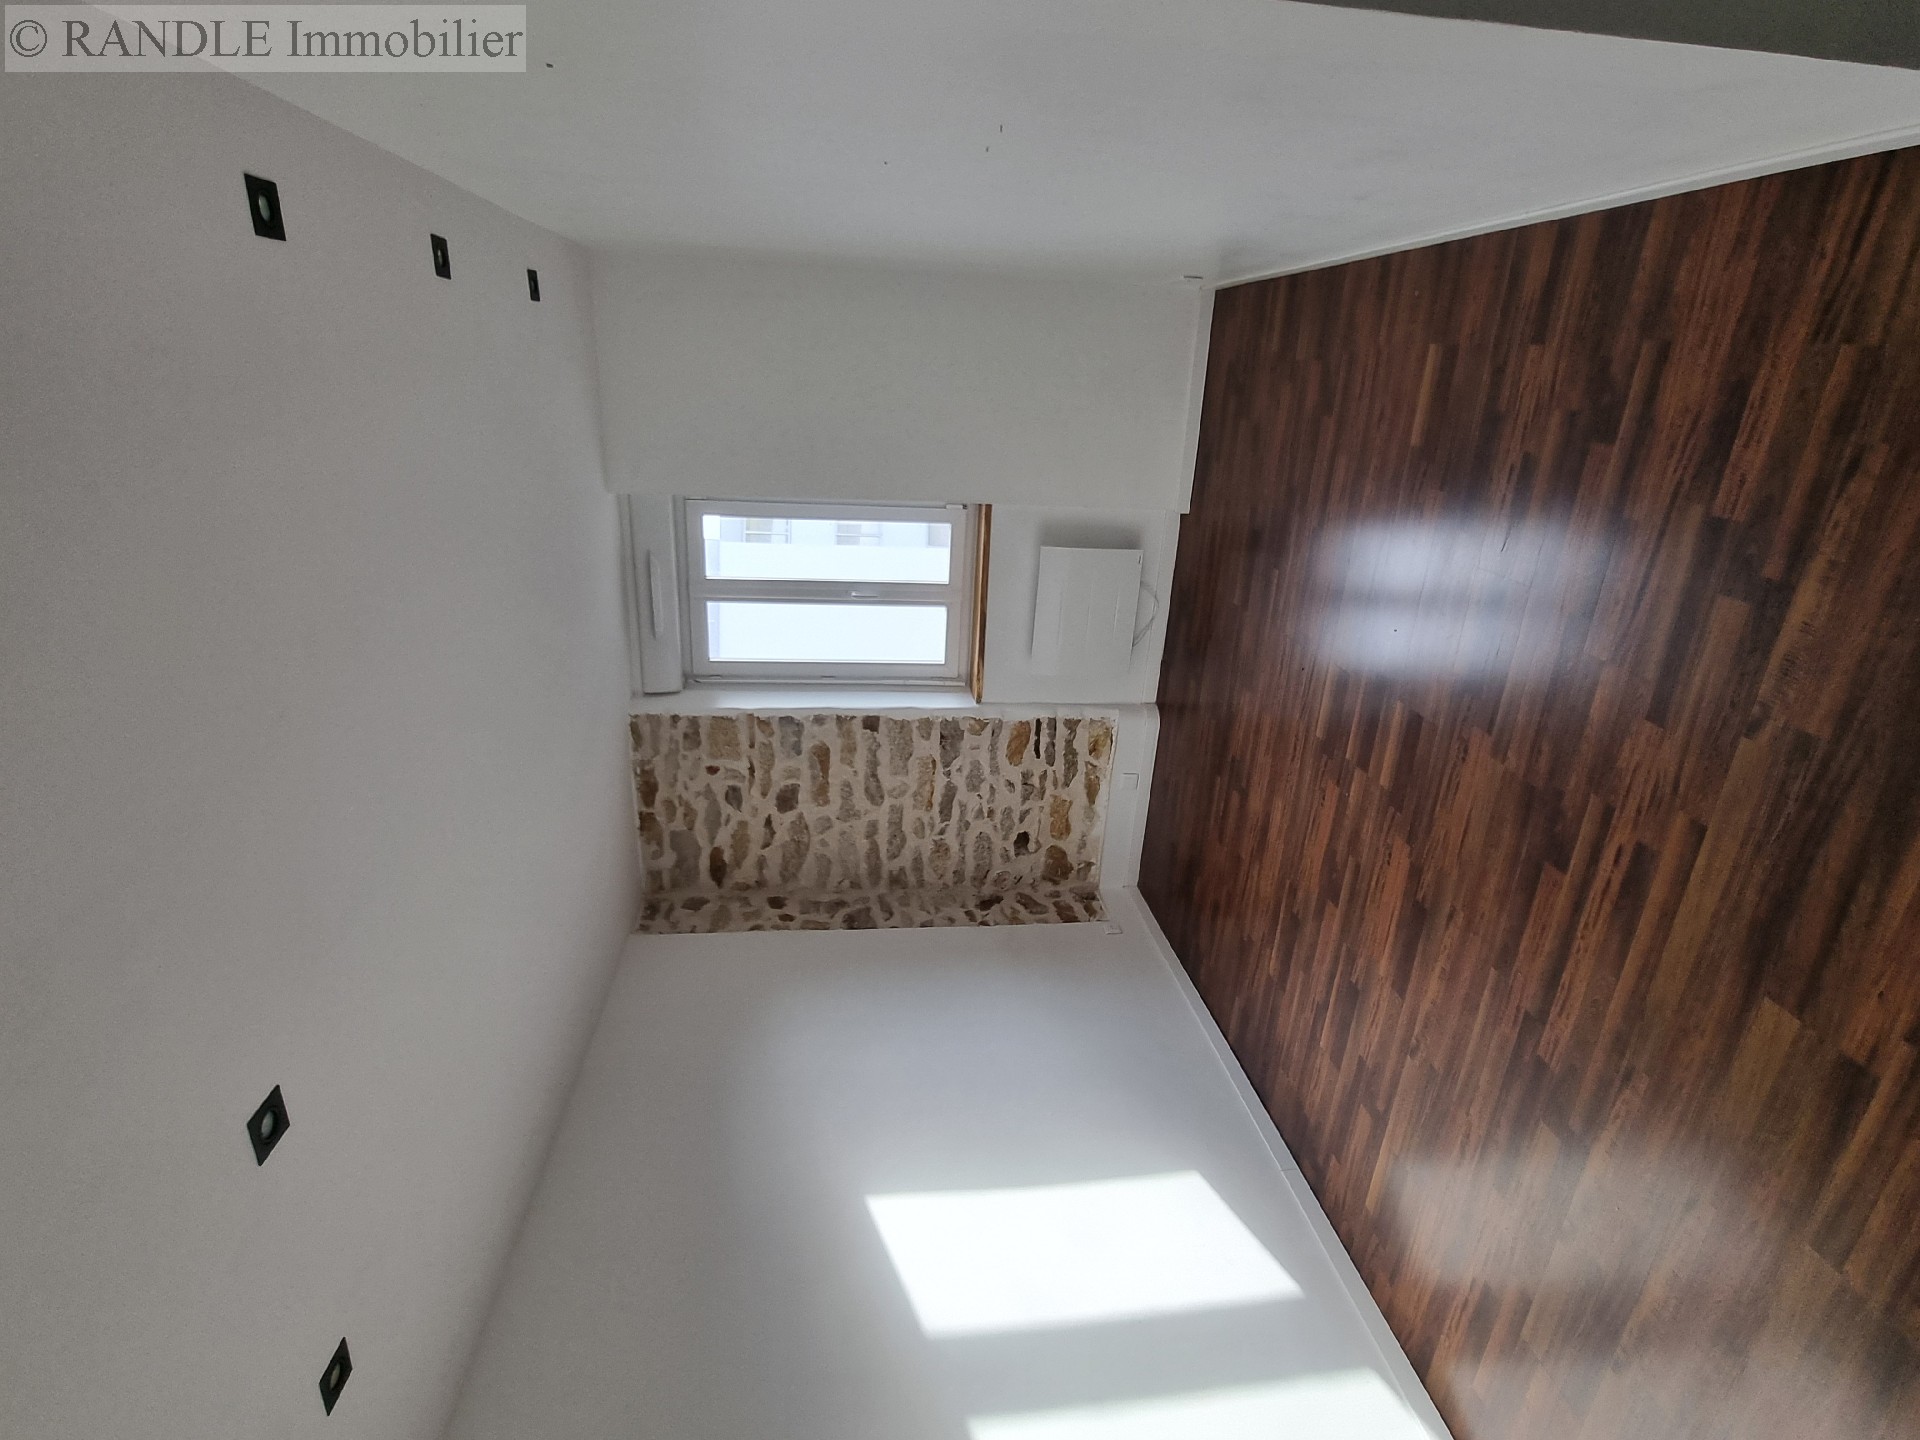 Vente appartement - LORIENT 80 m², 3 pièces